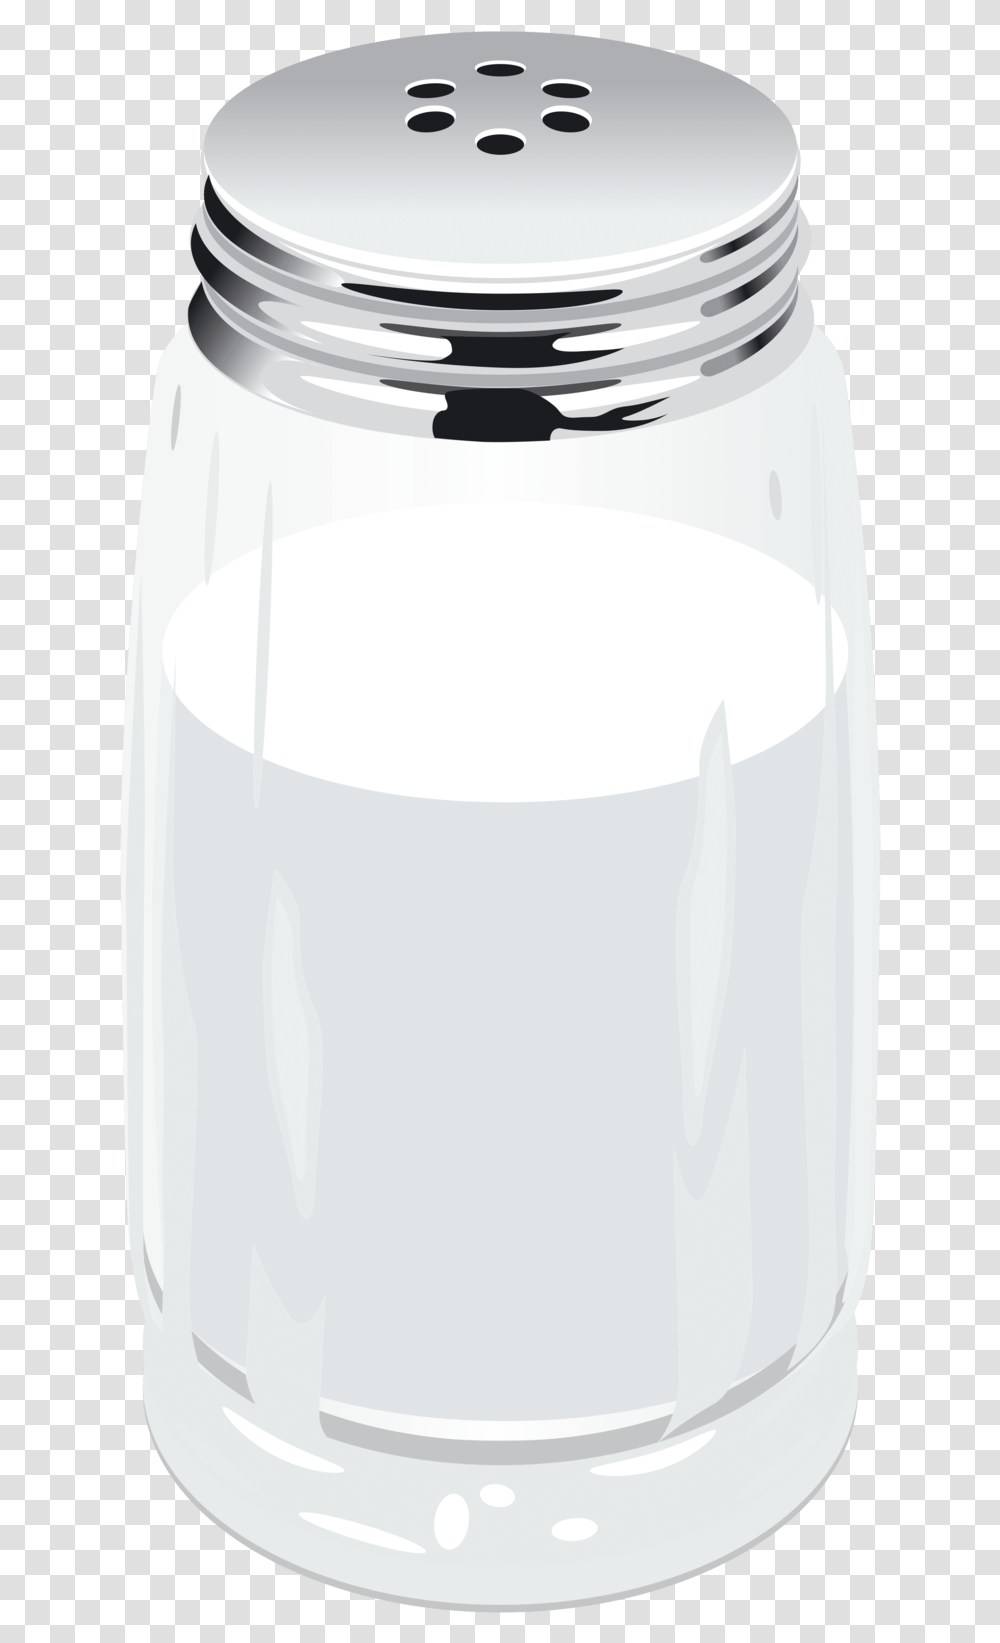 Download Free Salt Salt Shaker No Background, Jar, Bottle, Cylinder, Glass Transparent Png